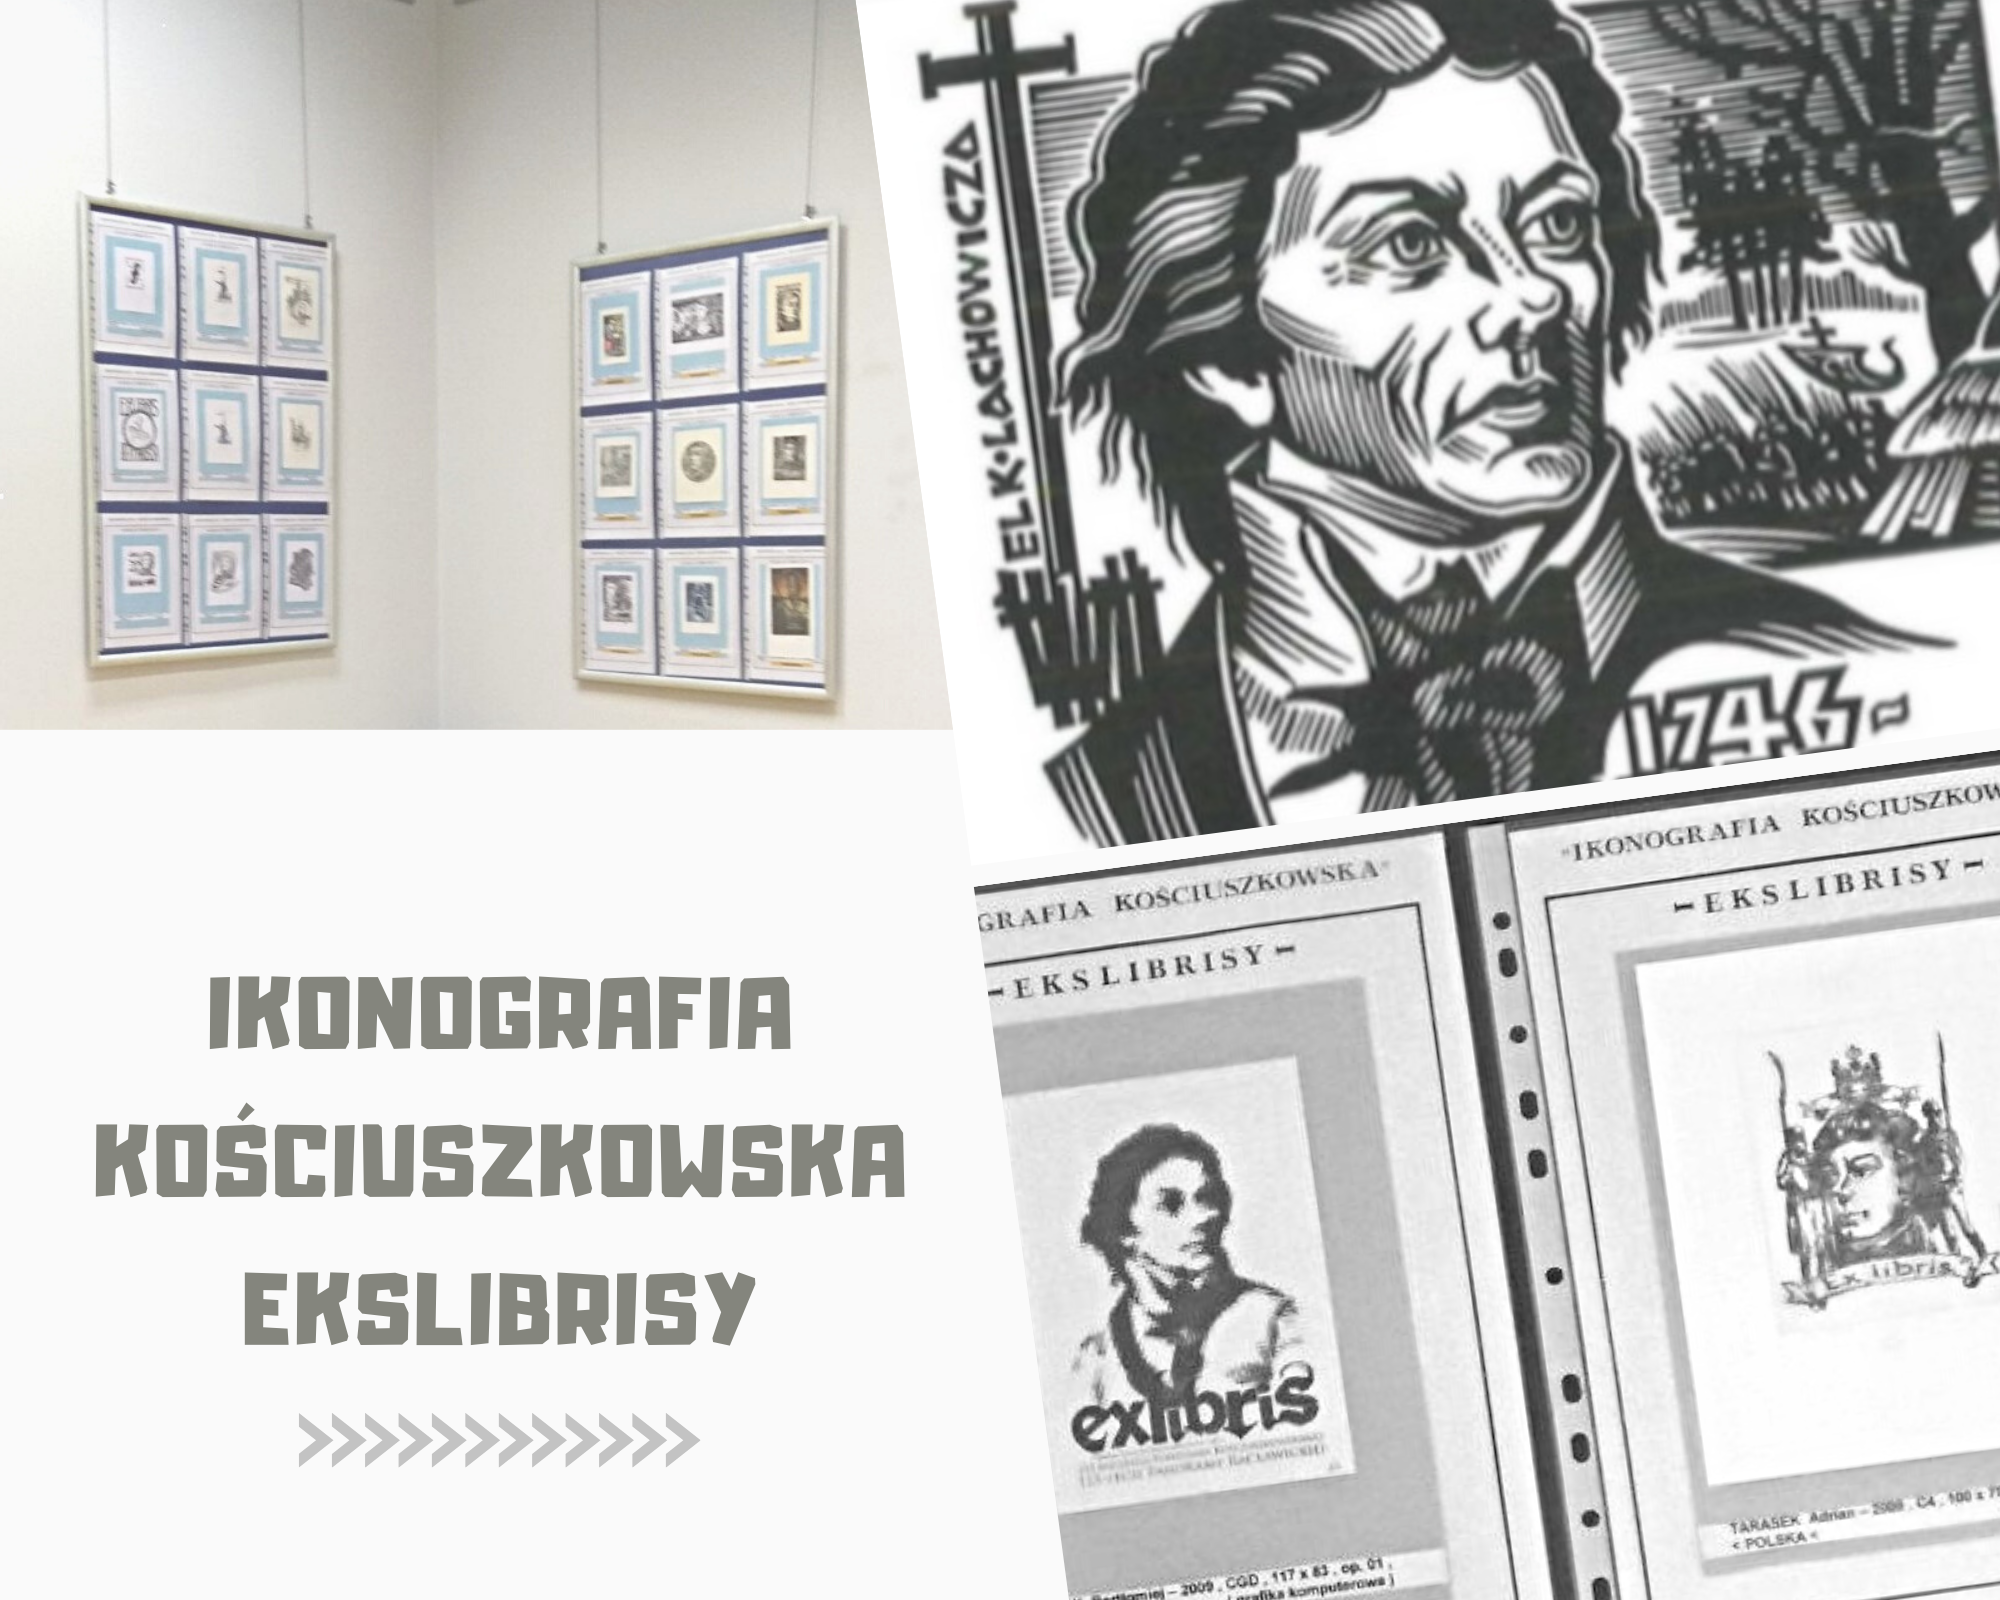 Ikonografia Kościuszkowska - ekslibrysy